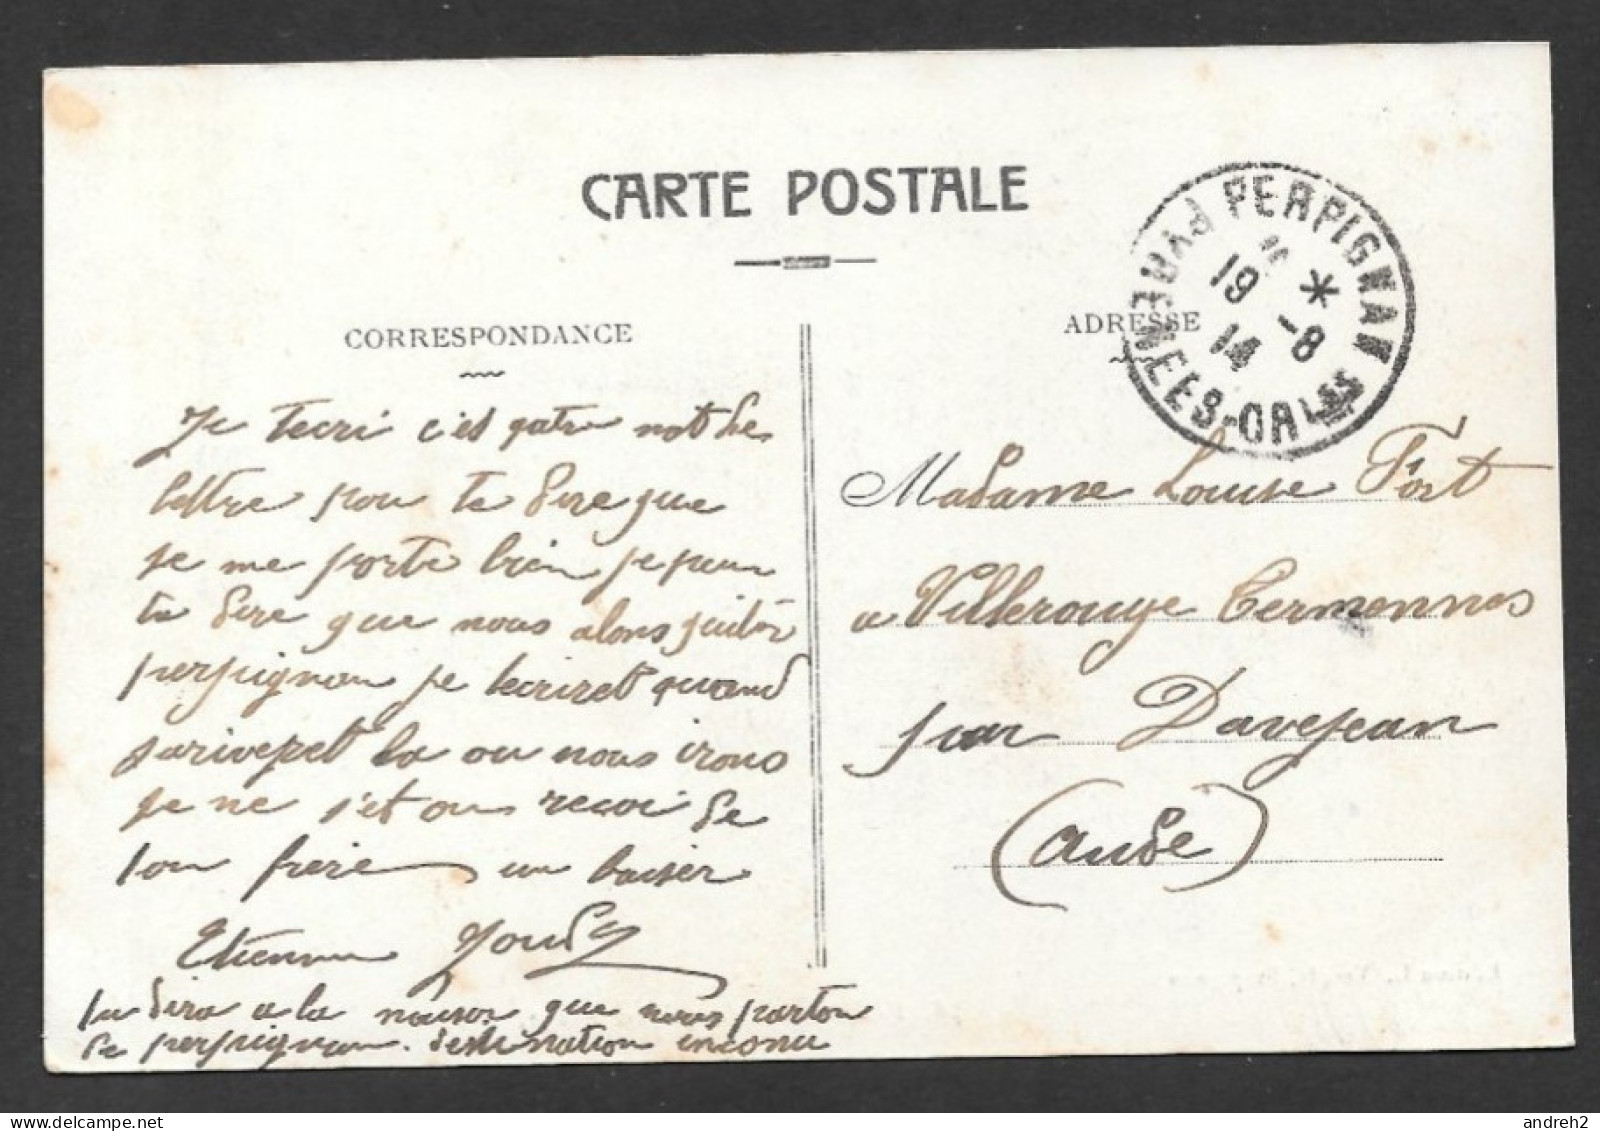 Perpignan  France - Oblitération 1914 Très Bel Oblitération - Place Arago - Édition L. Verges - Perpignan